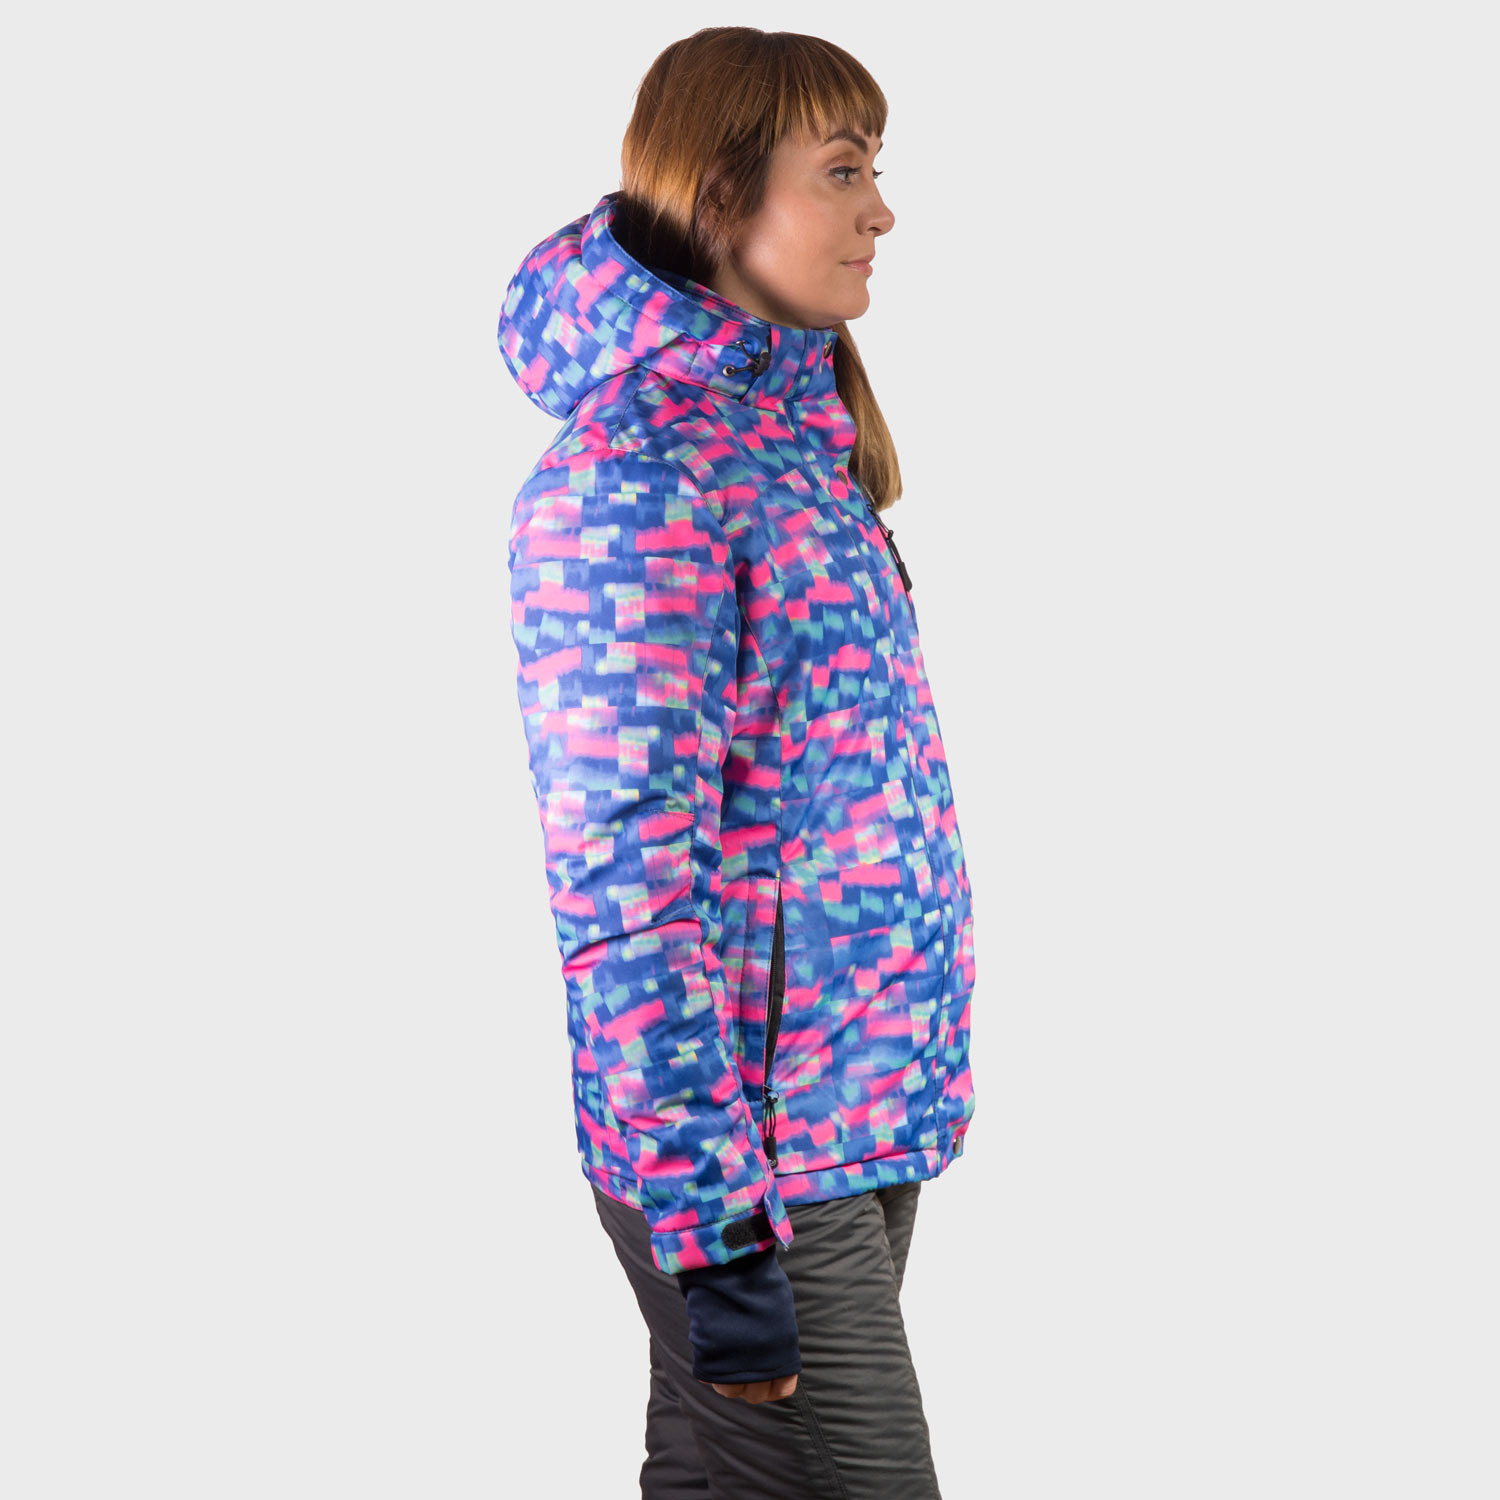 Зимний женский лыжный костюм в интернет магазине цена фото